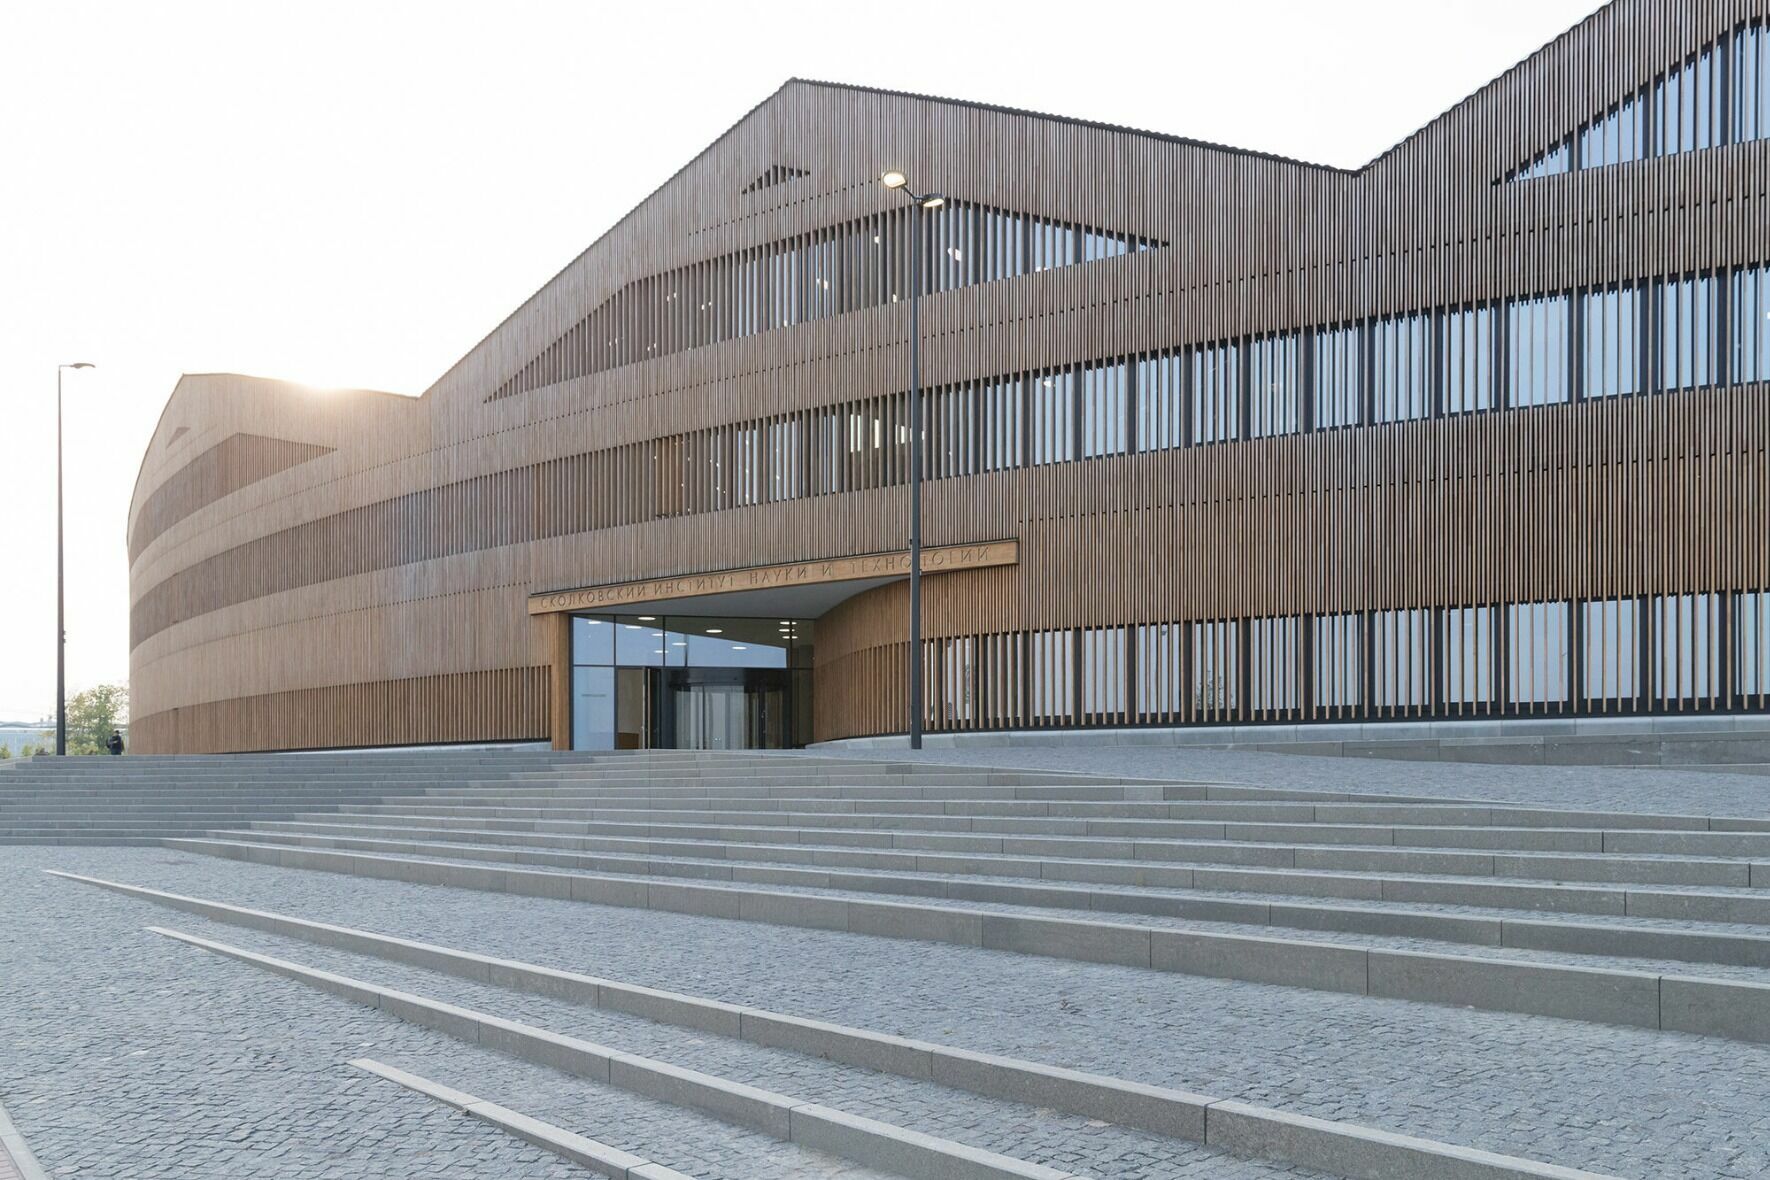 Лауреаты Притцкеровской премии - швейцарские архитекторы Жак Херцог и Пьер де Мерон спроектировали кампус для образовательного и исследовательского центра "Сколтех" в Сколково